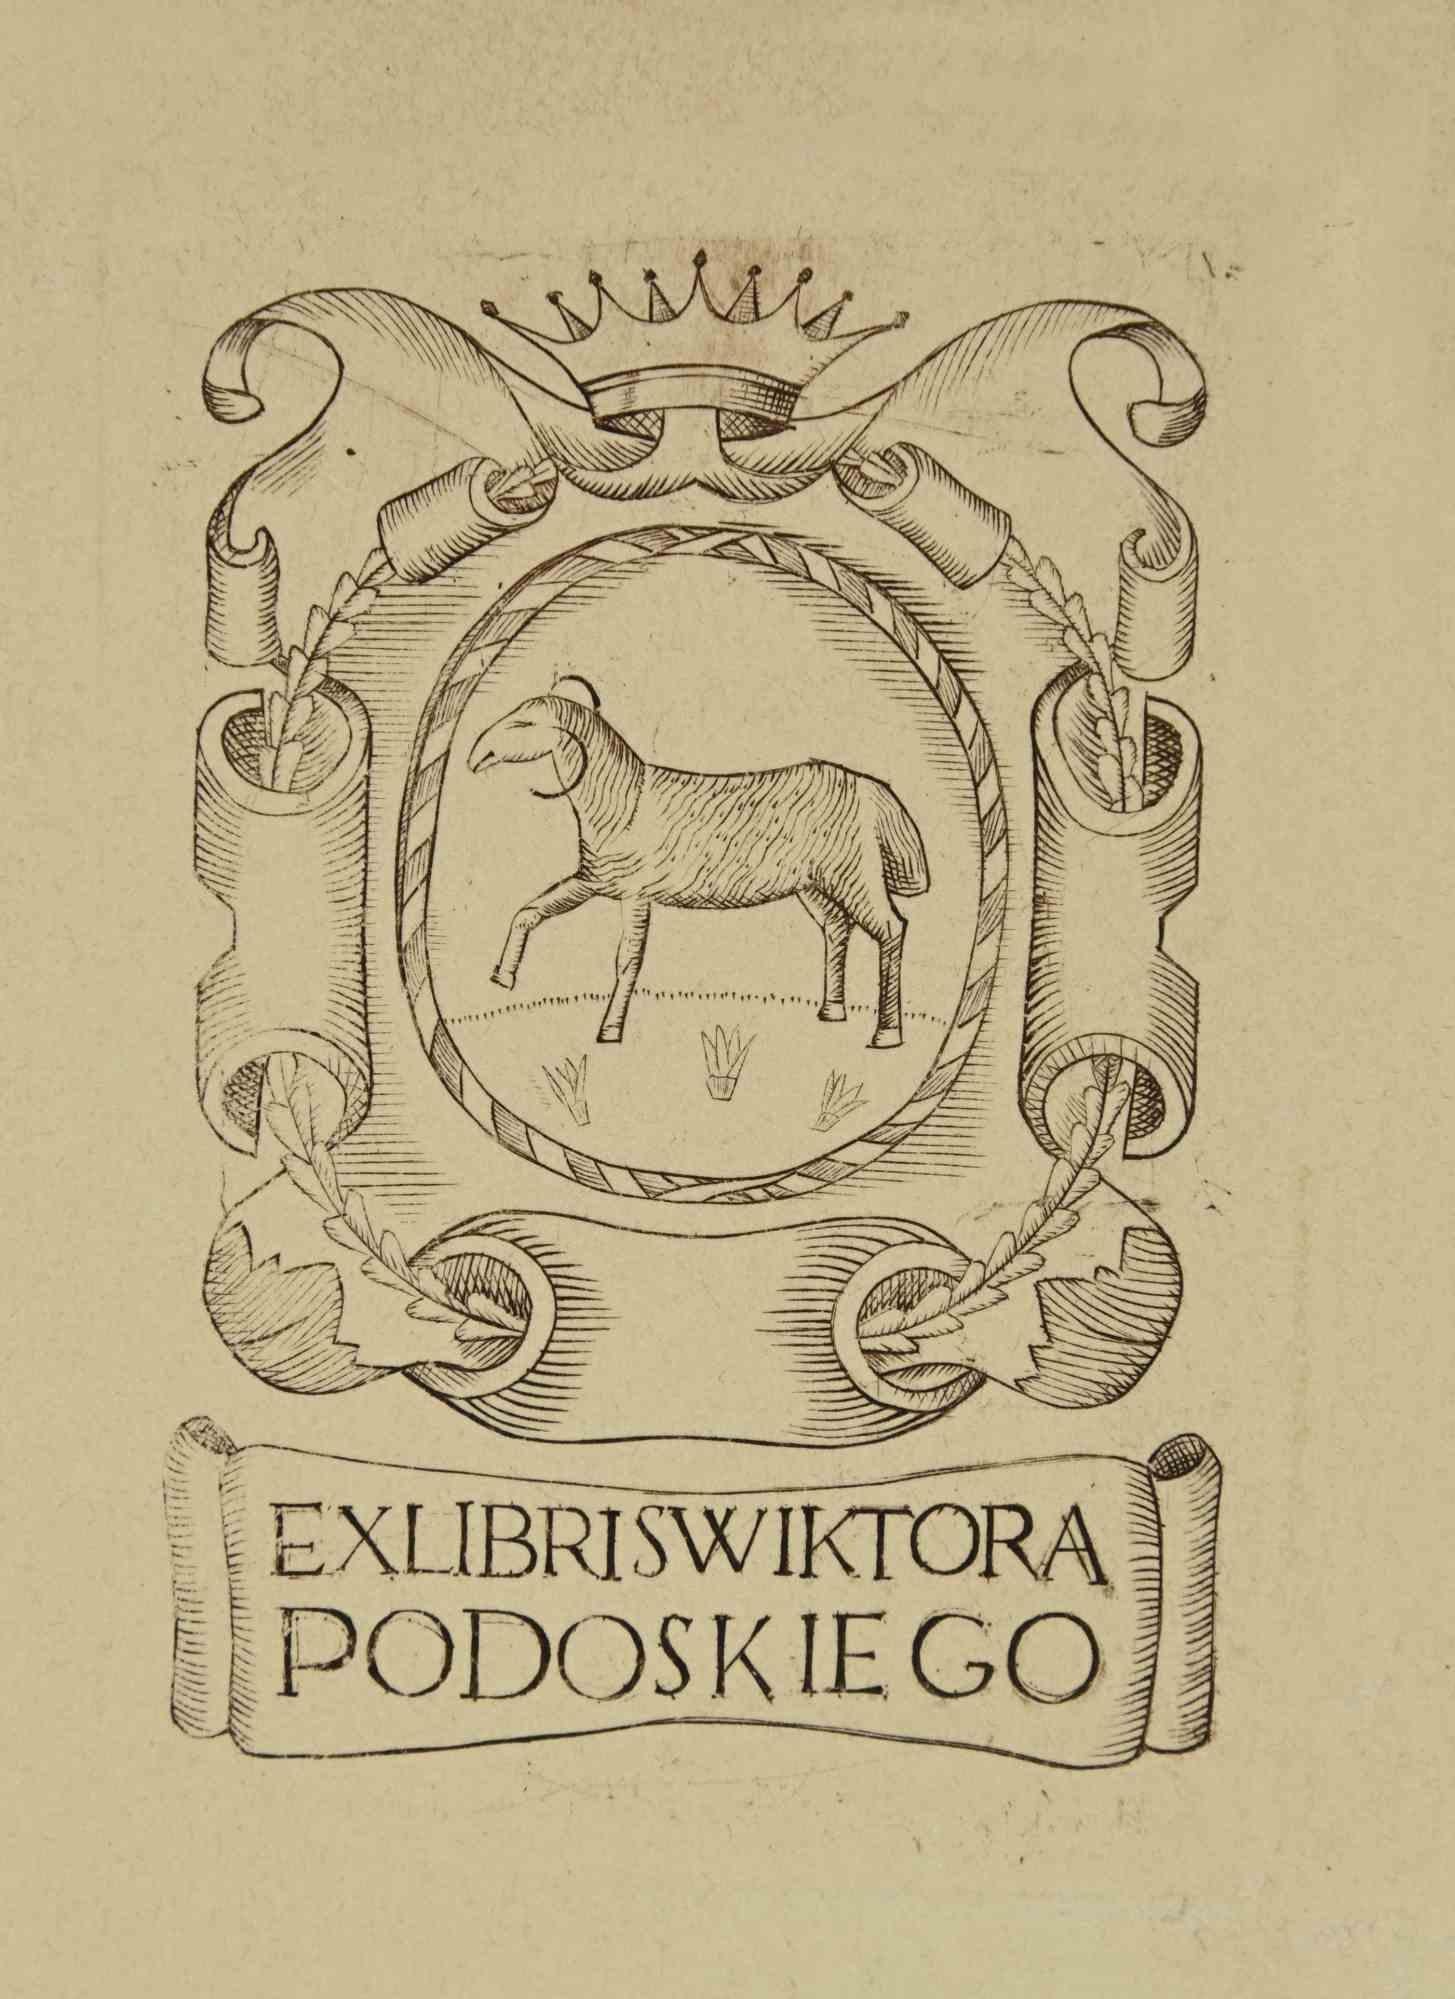 Ex libris - Wiktora Podoski Ego ist ein in den 1930er Jahren entstandenes Kunstwerk des Künstlers Wiktor Podoski (1901-1970).

Holzschnitt auf Elfenbeinpapier. Handsigniert auf der Rückseite. Gute Bedingungen.

Das Kunstwerk repräsentiert ein